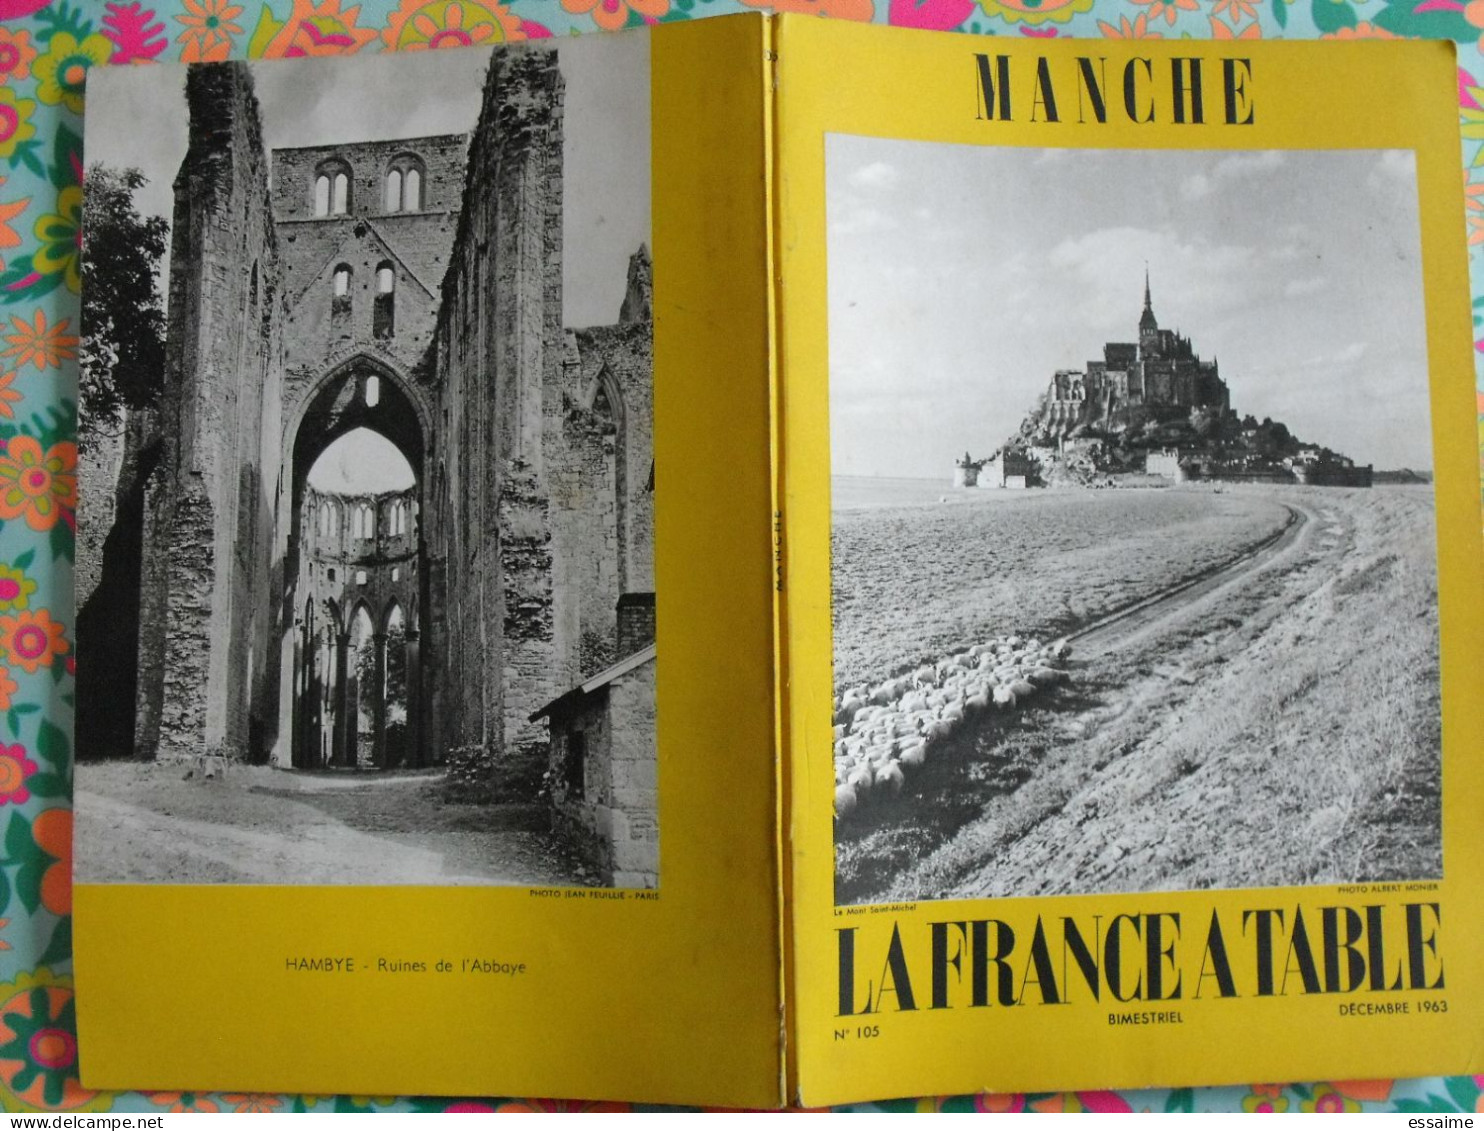 La France à Table N° 105. 1963. Manche. Saint-lo Cérisy Carentan Cherbourg Flamanville Urville. Gastronomie - Tourism & Regions